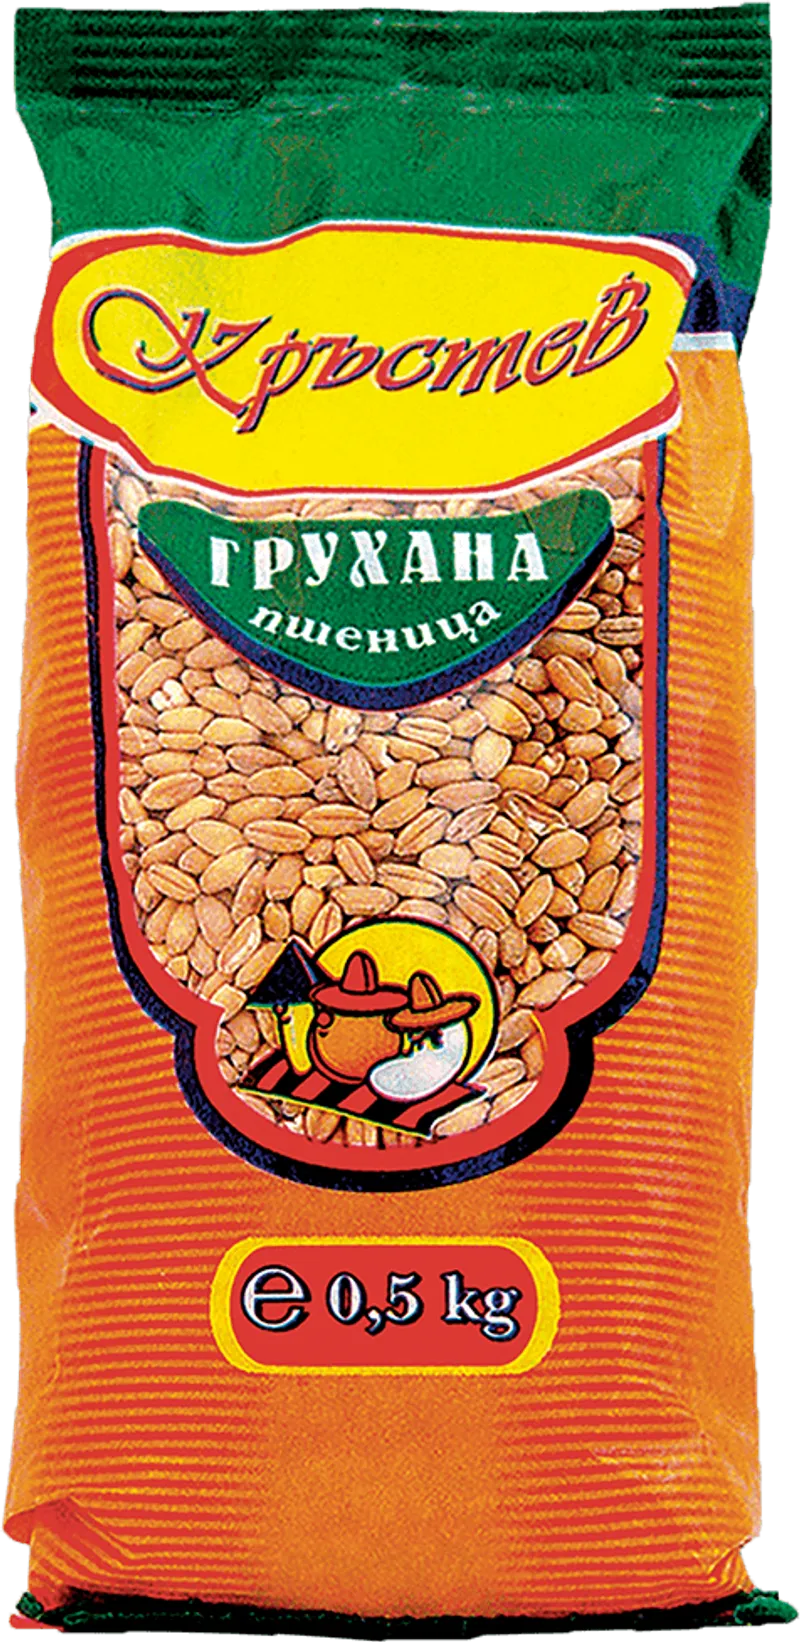 Пшеница КРЪСТЕВ Грухана 500 г